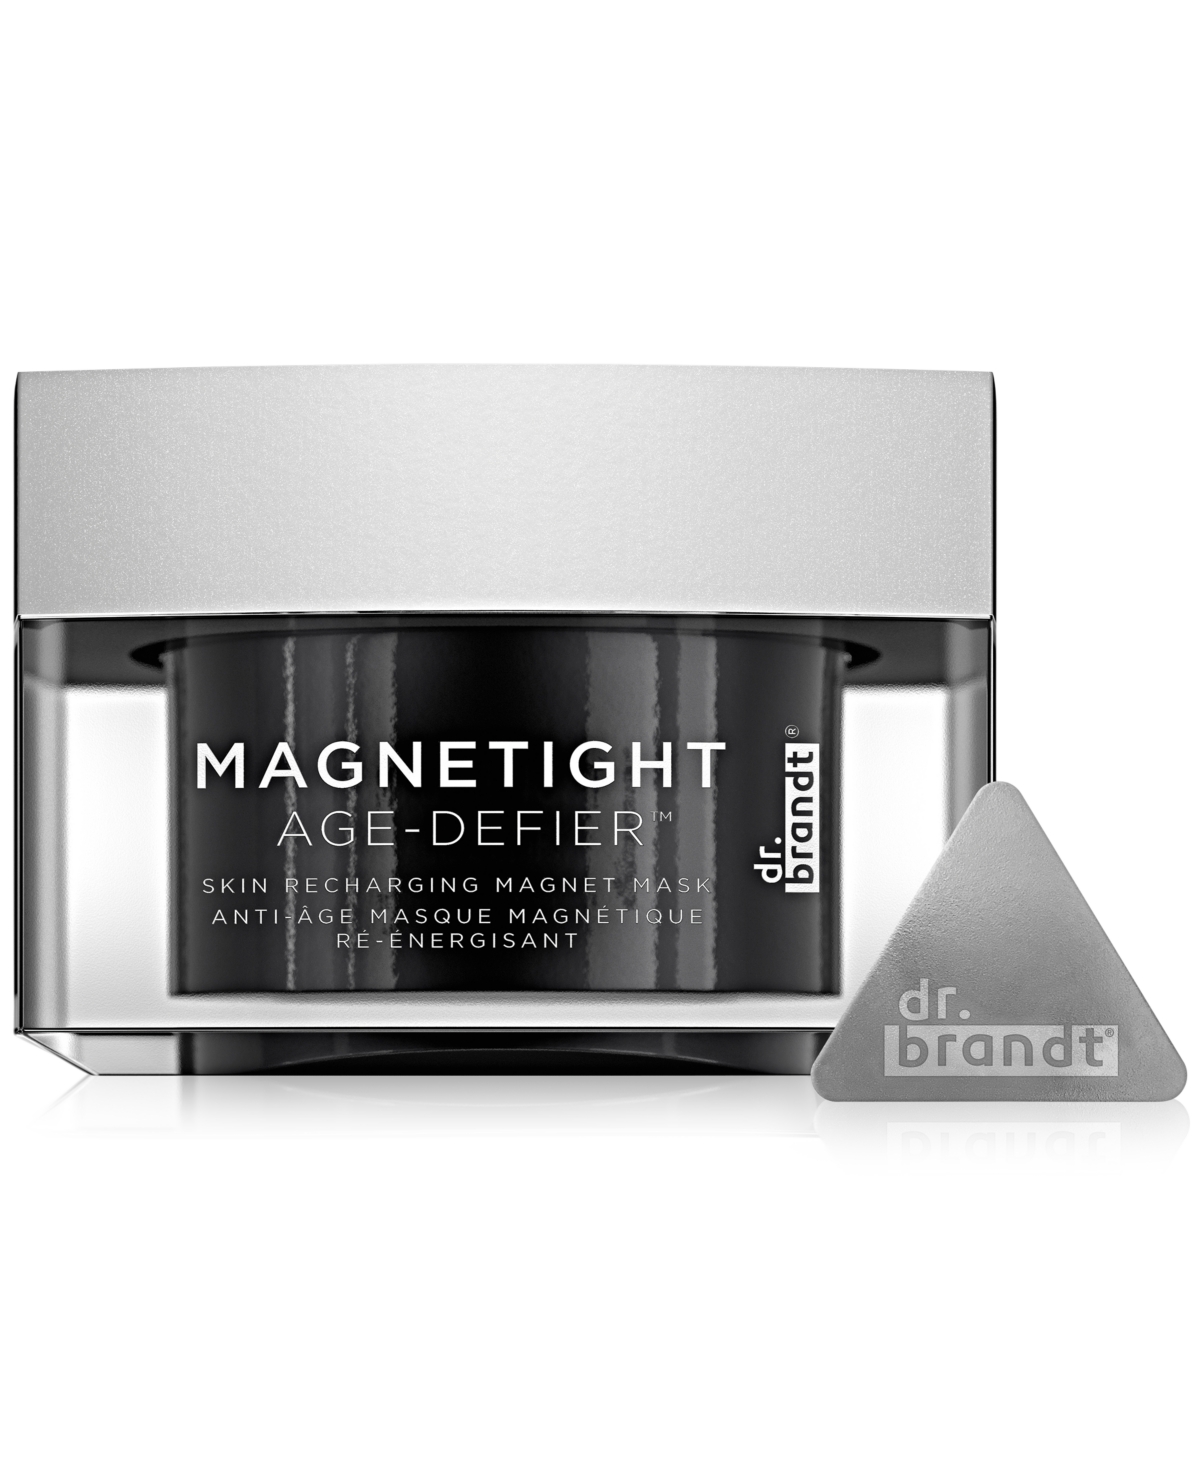 Dr. Brandt Magnetight Age-Defier Face Mask, 0.63-oz.